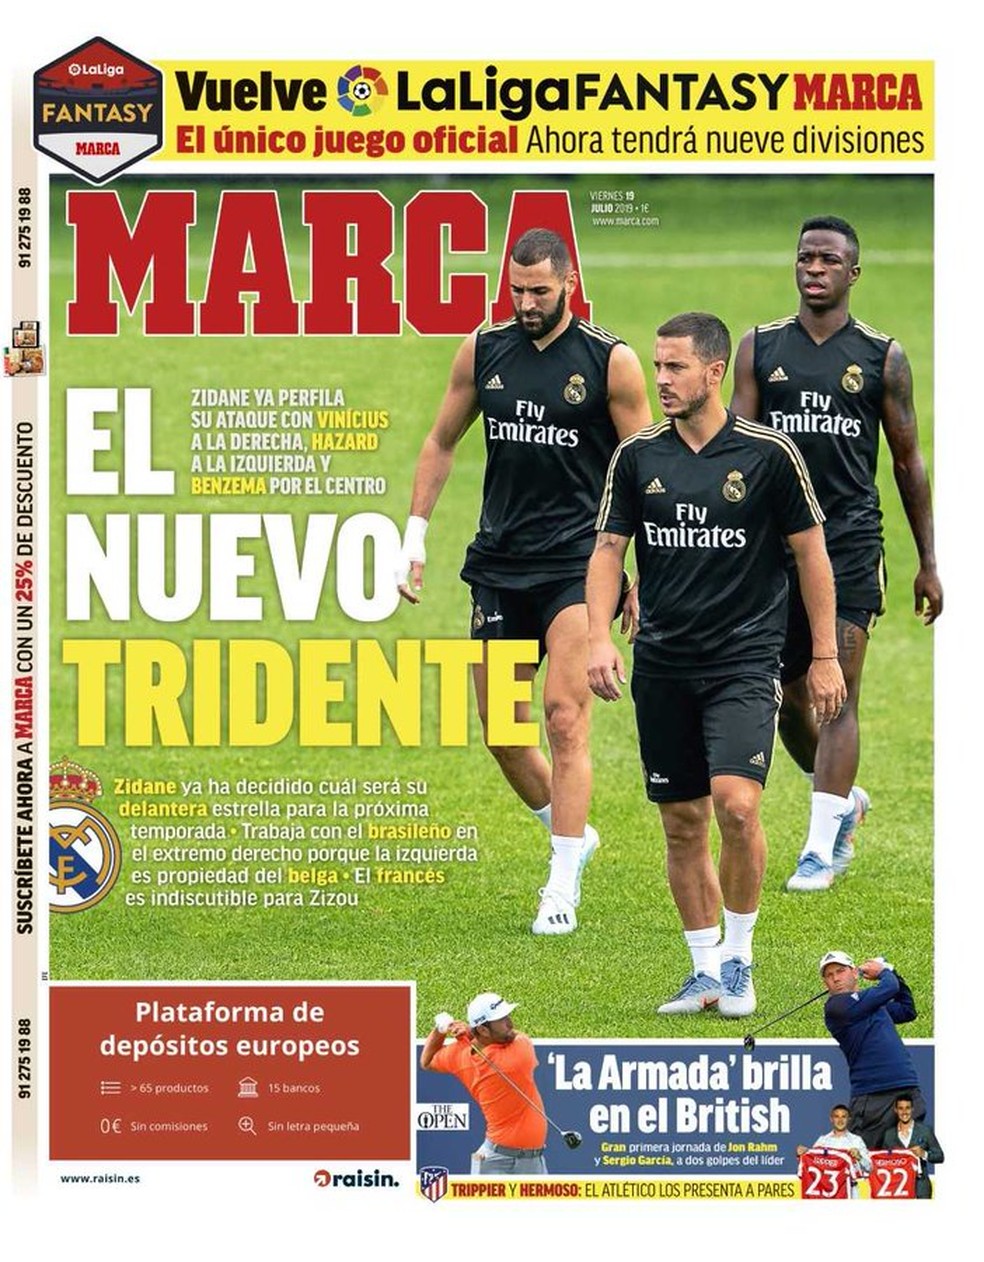 "O novo tridente" do Real Madrid, segundo o "Marca" — Foto: Reprodução/Marca